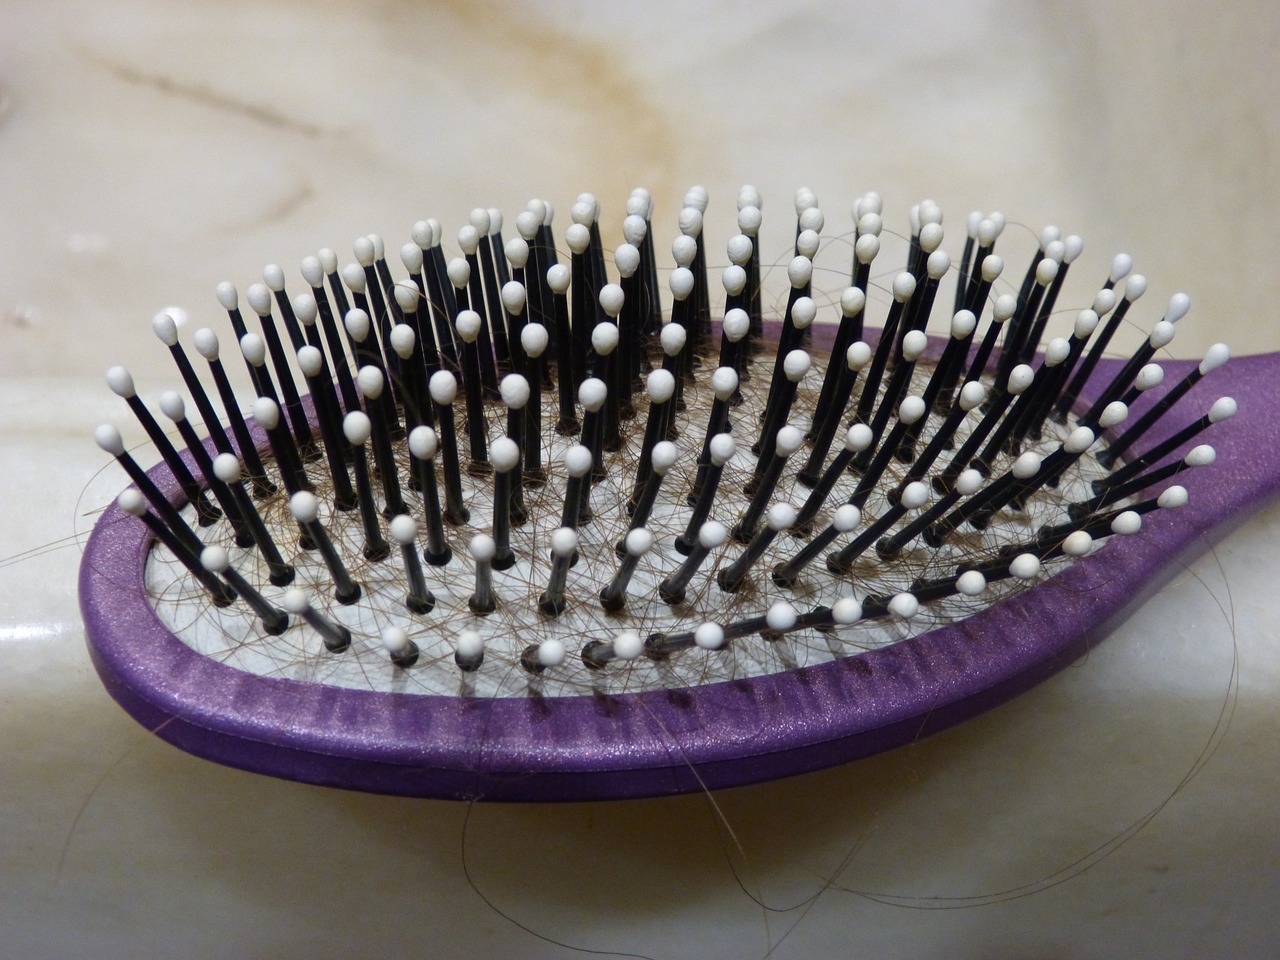 Hair Combing Techniques